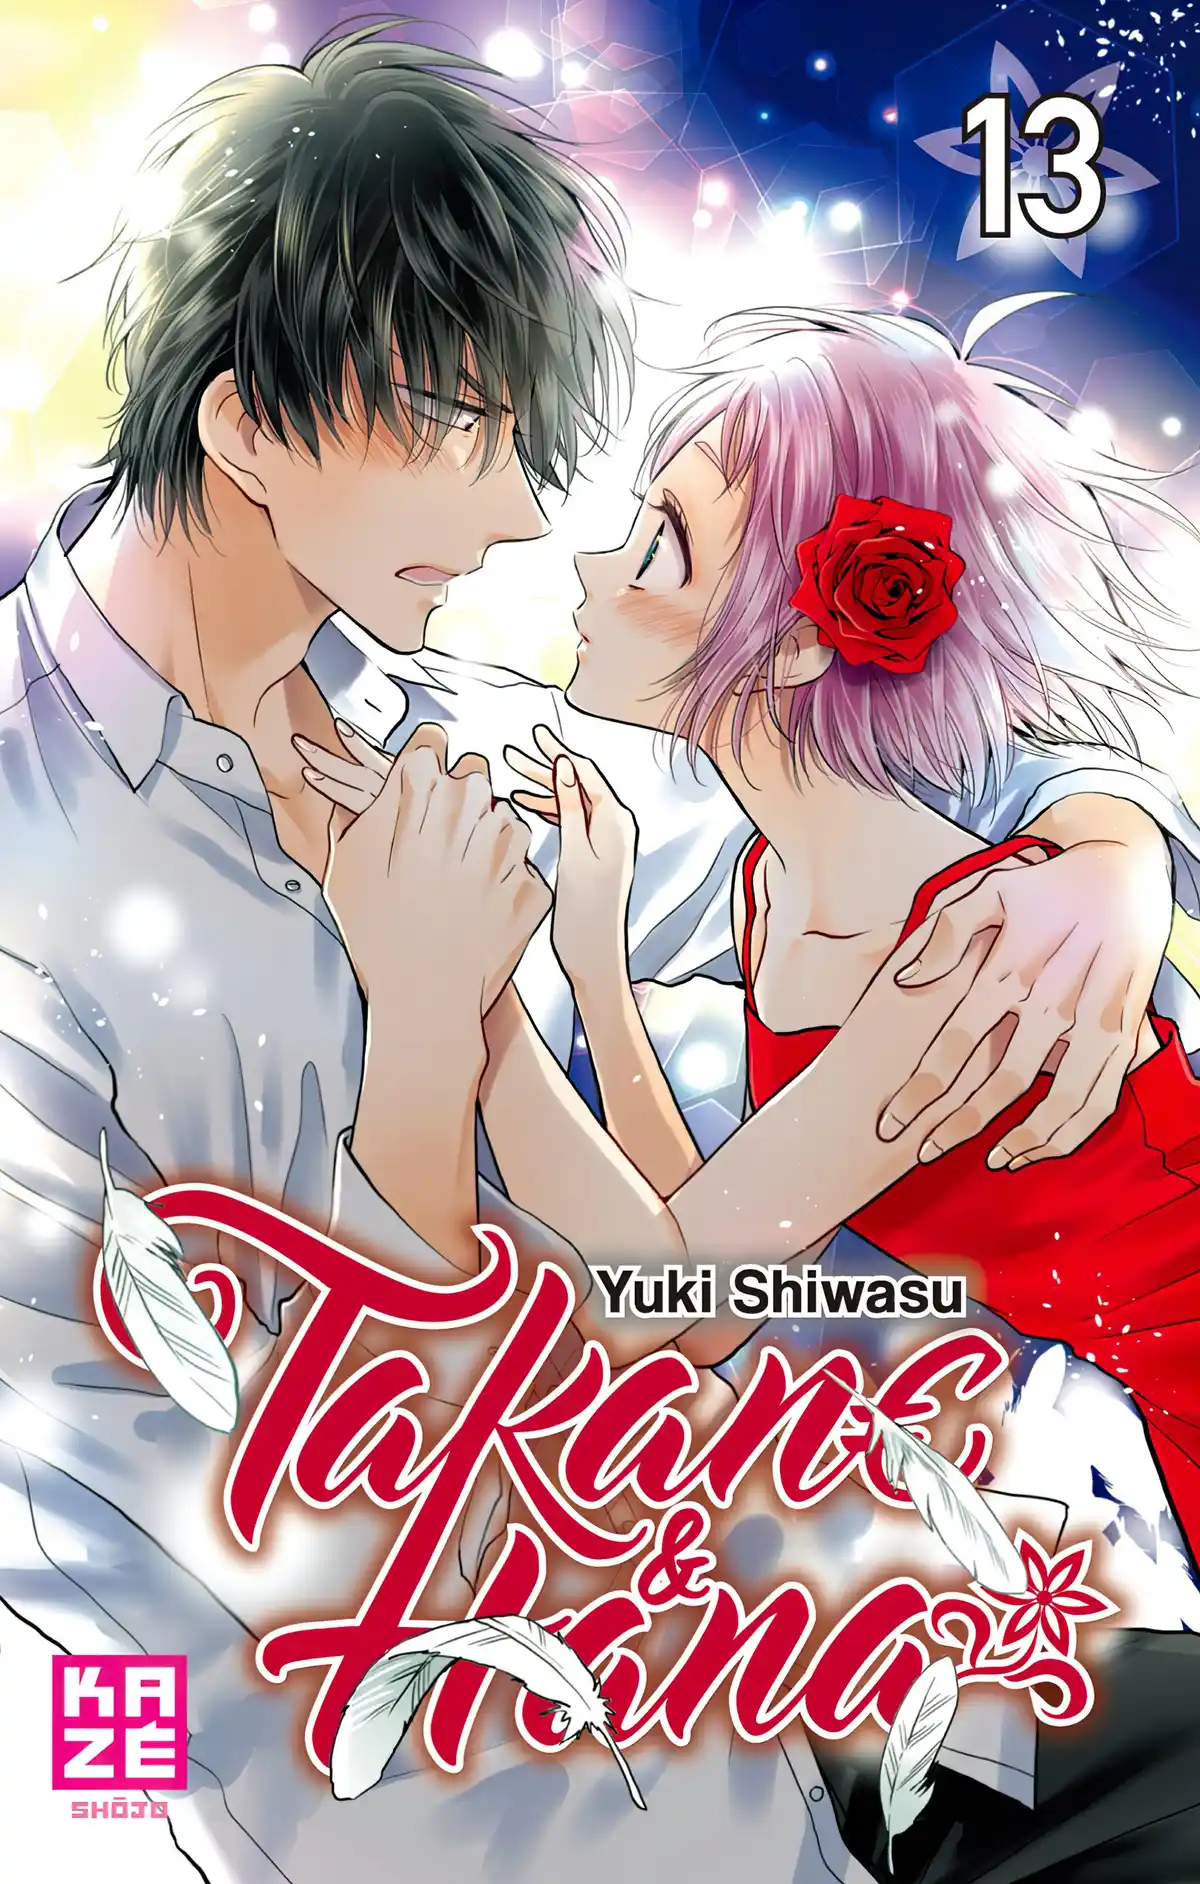 Takane & Hana Volume 13 page 1